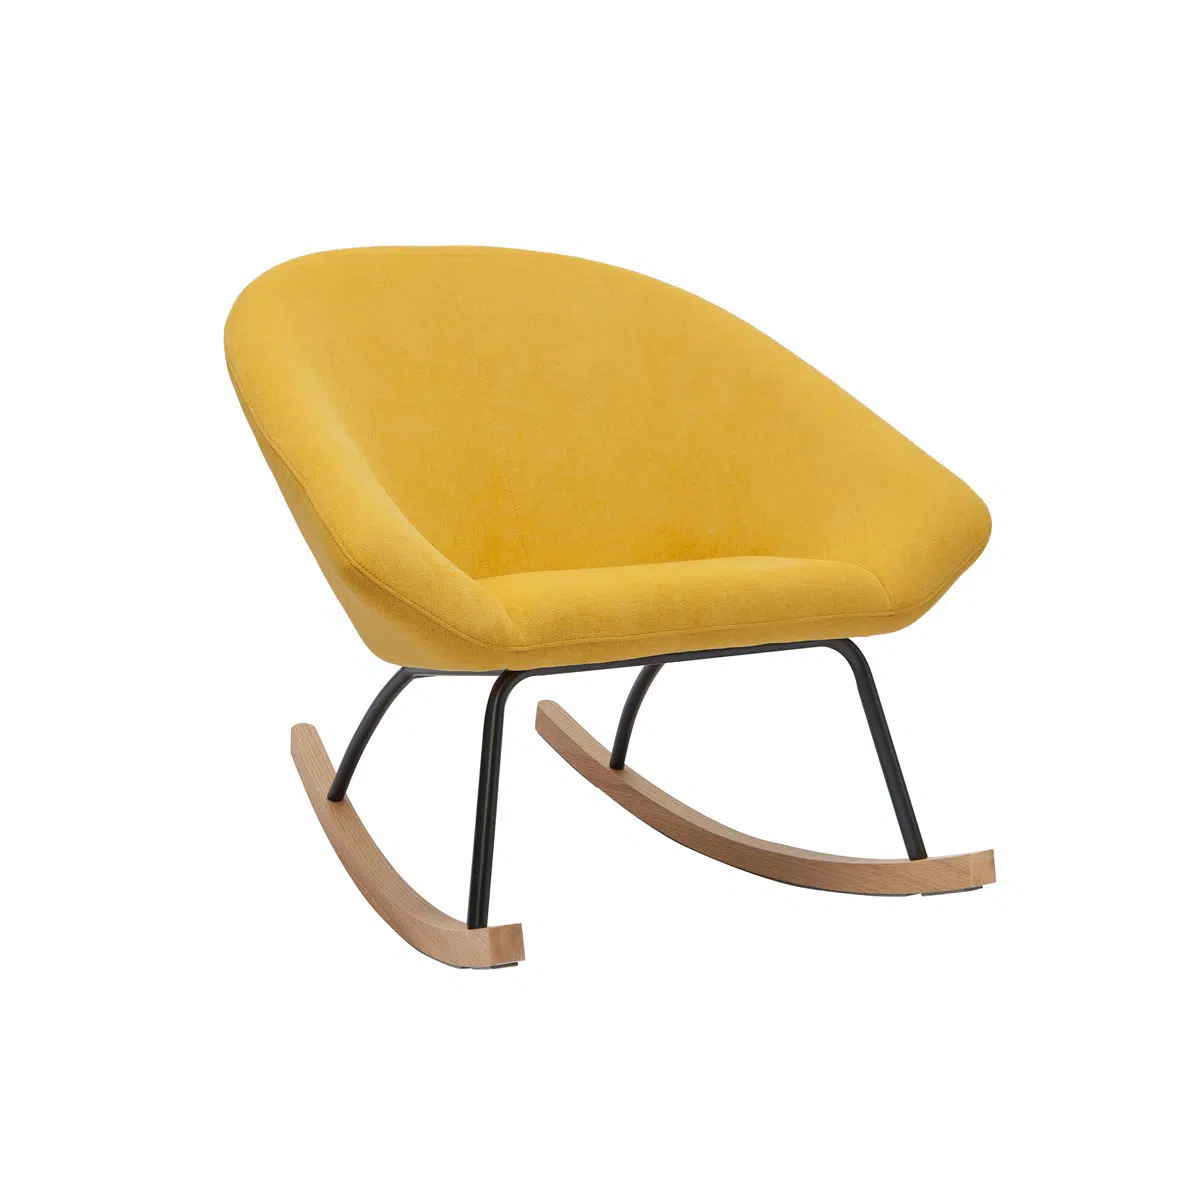 Rocking chair design en tissu effet velours jaune moutarde